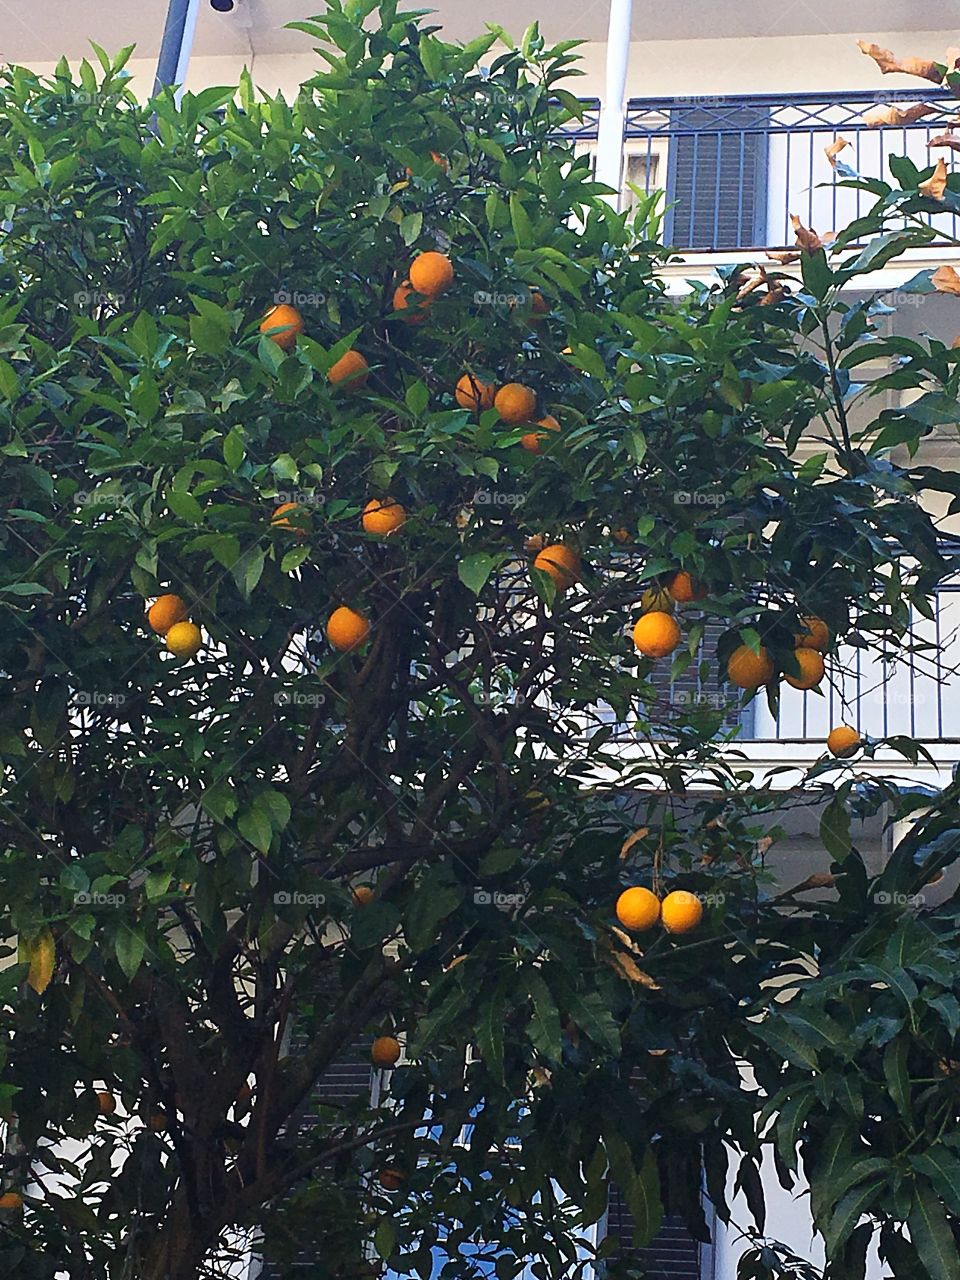 Orange tree in the city that never sleeps